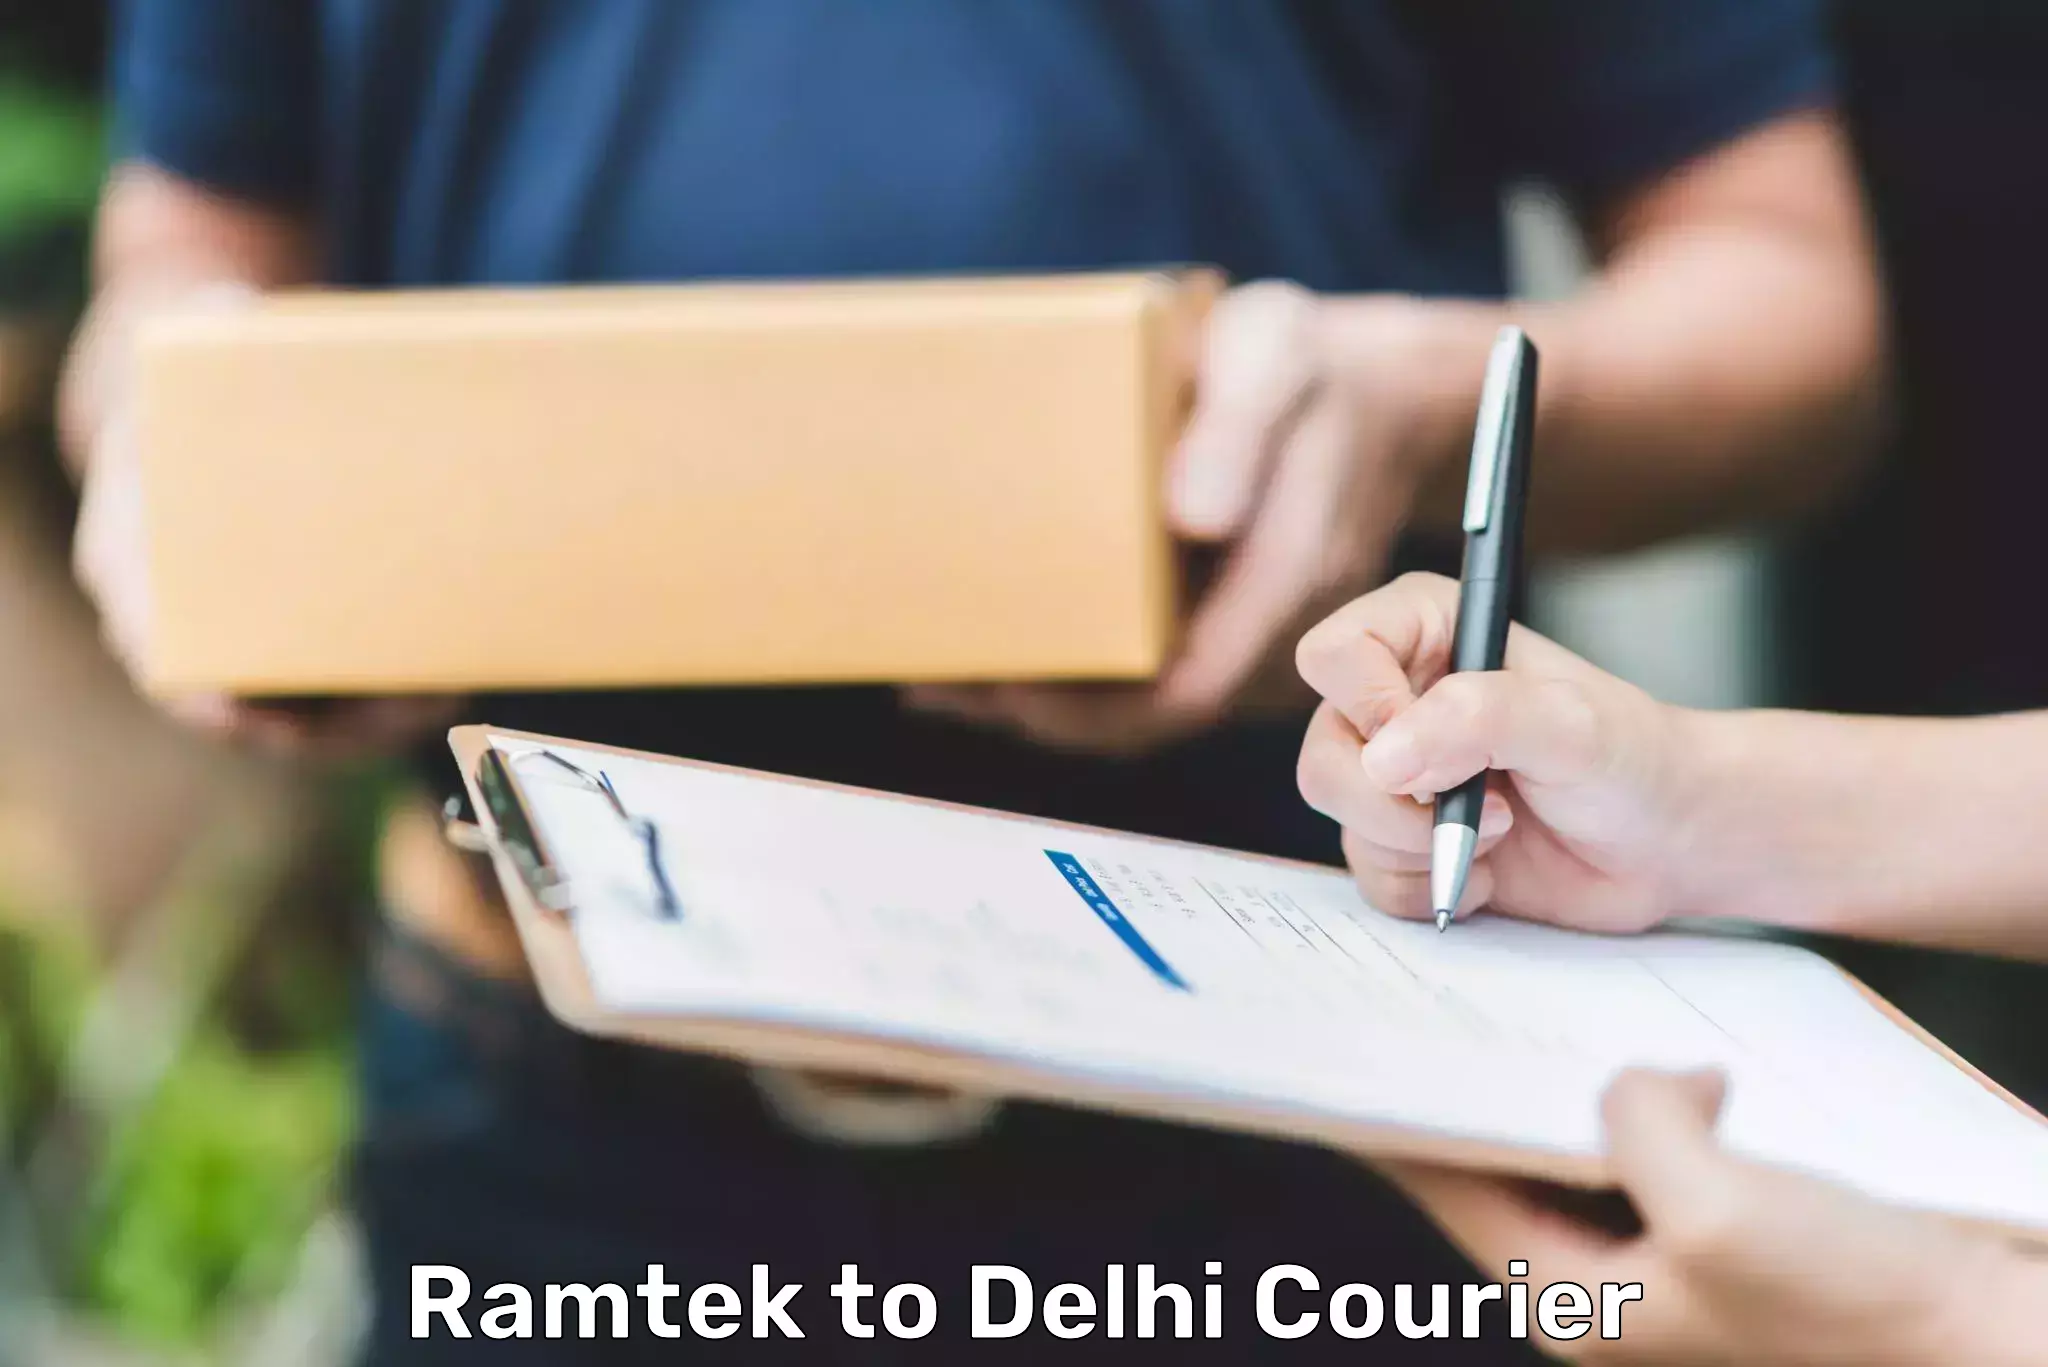 Next-day delivery options Ramtek to Guru Gobind Singh Indraprastha University New Delhi